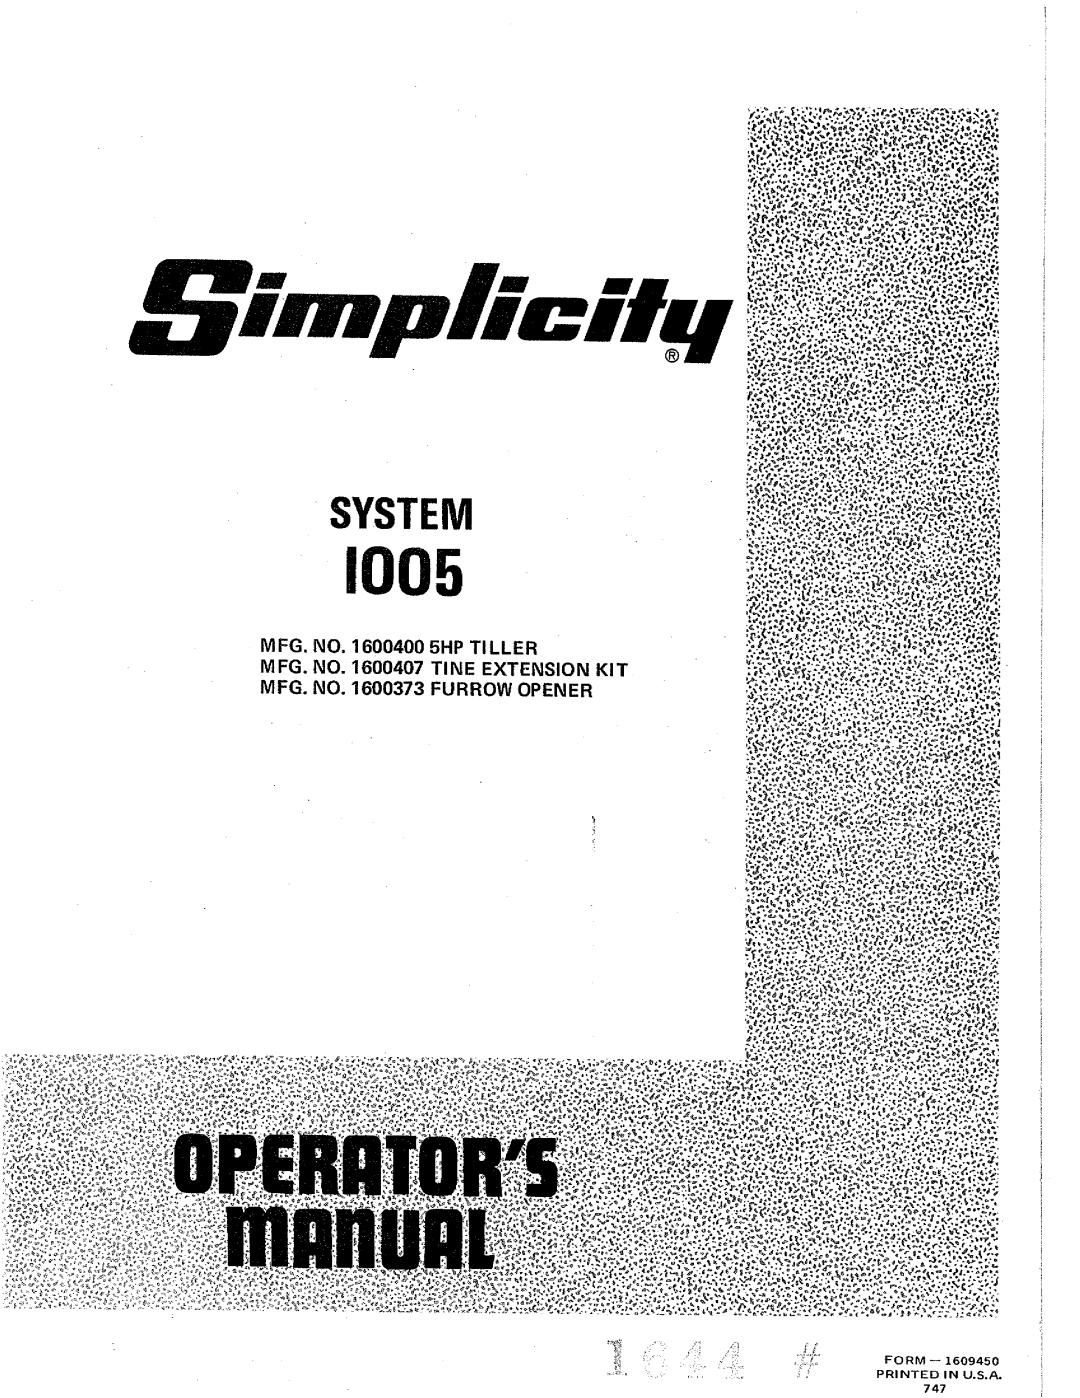 Simplicity 1005 manual 